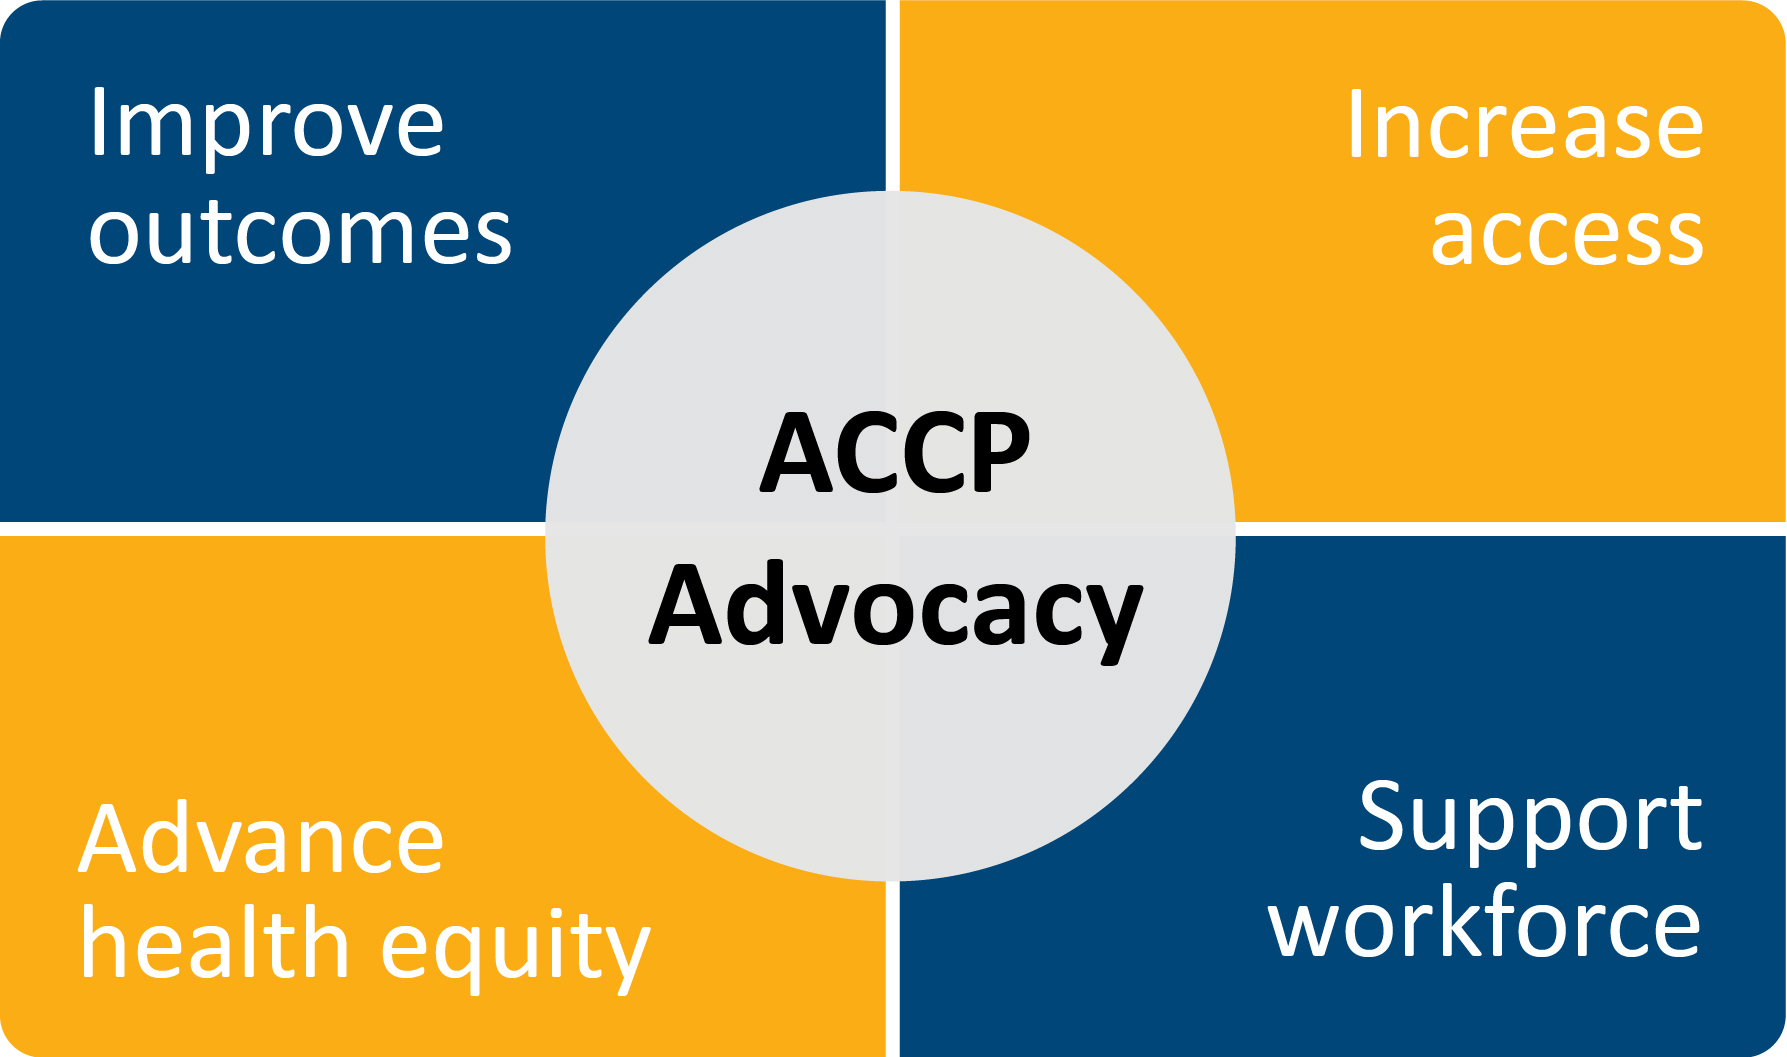 ACCP's Advocacy Priorities